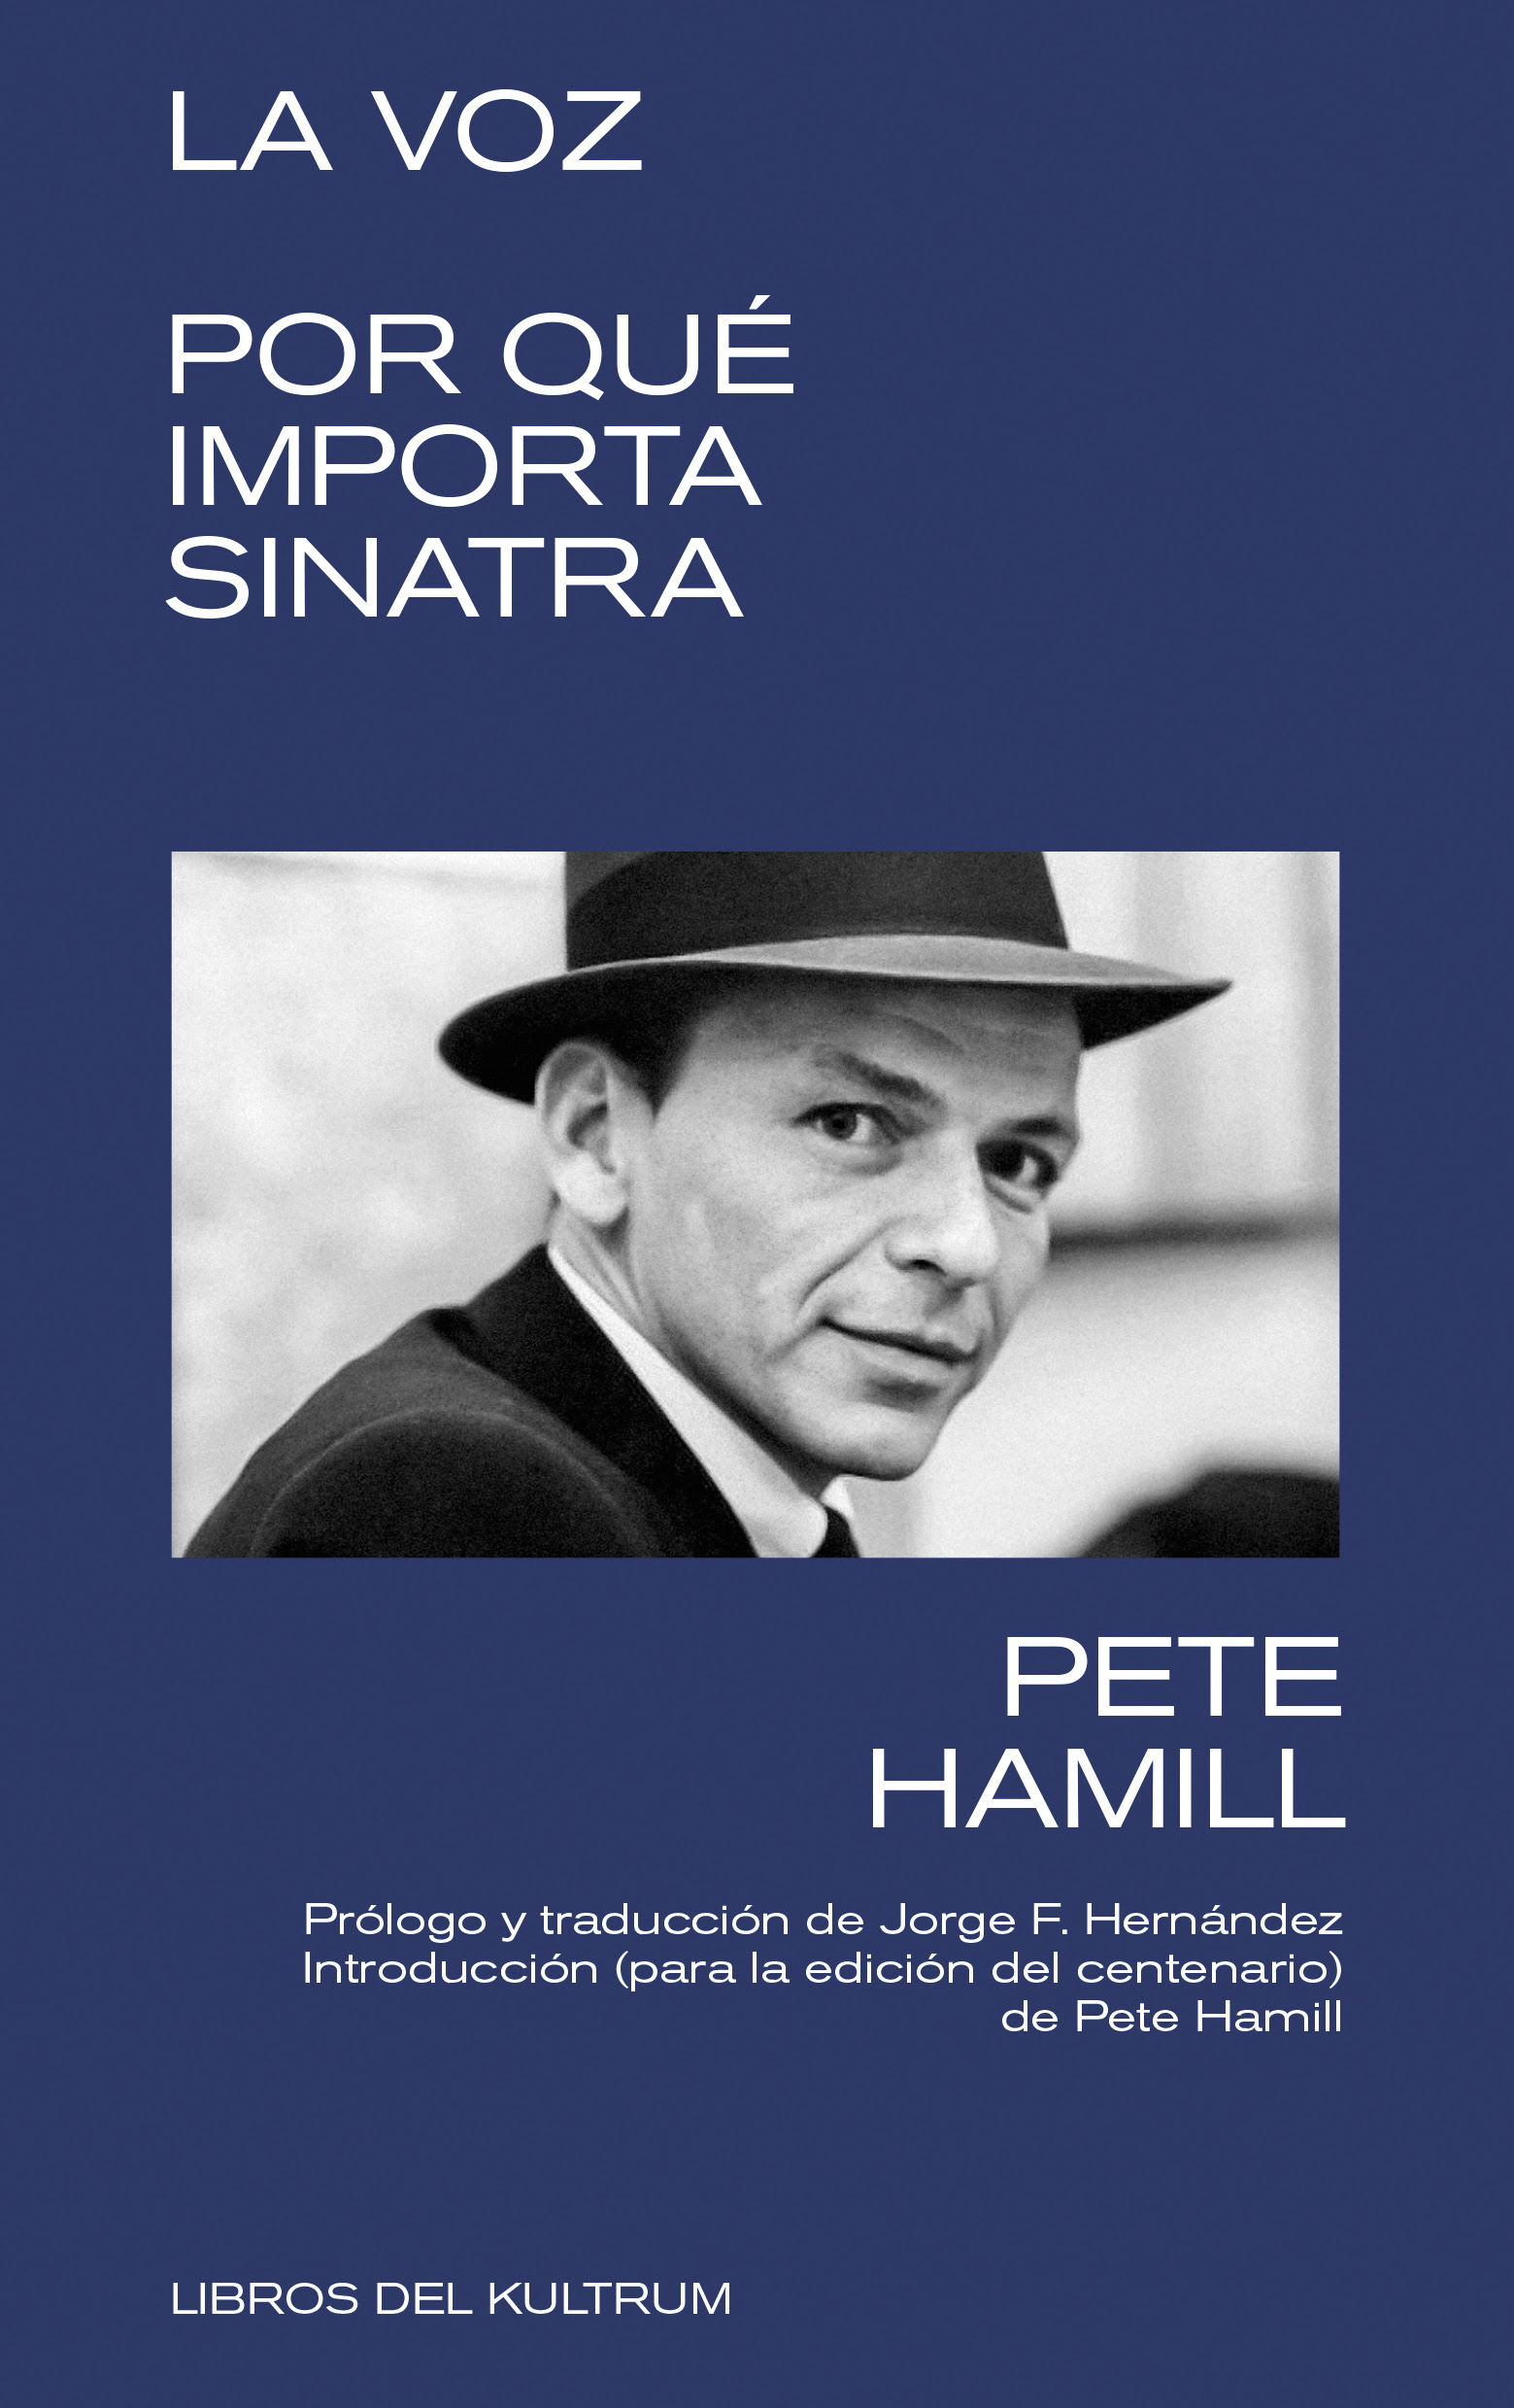 La Voz. Por qué importa Sinatra – Pete Hamill (Libros del Kultrum)